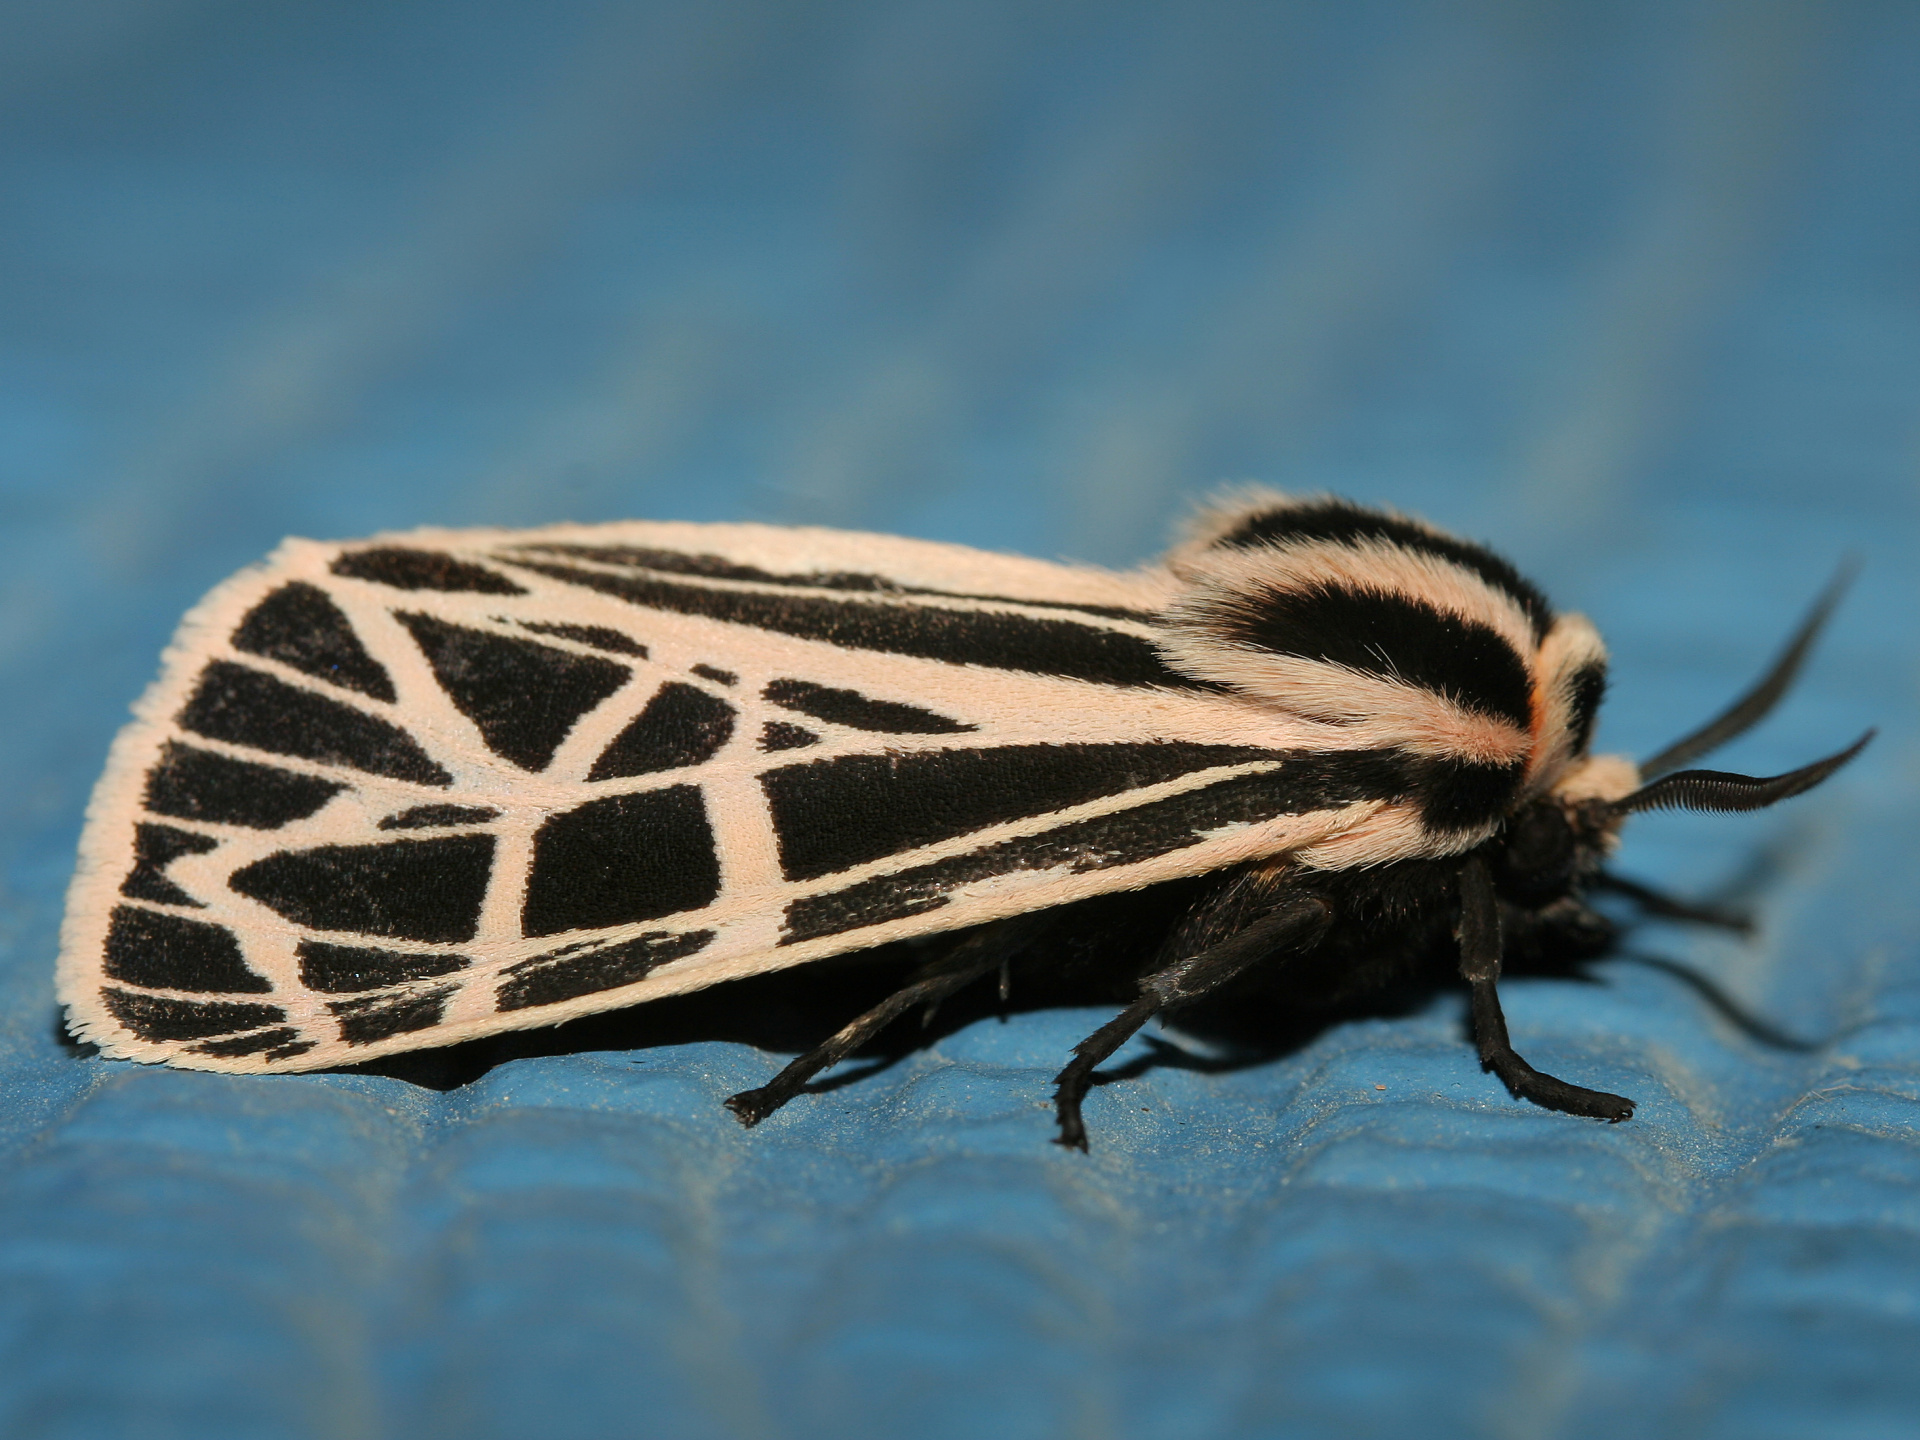 Grammia parthenice (Podróże » USA: Na ziemi Czejenów » Zwierzęta » Motyle i ćmy » Arctiidae)